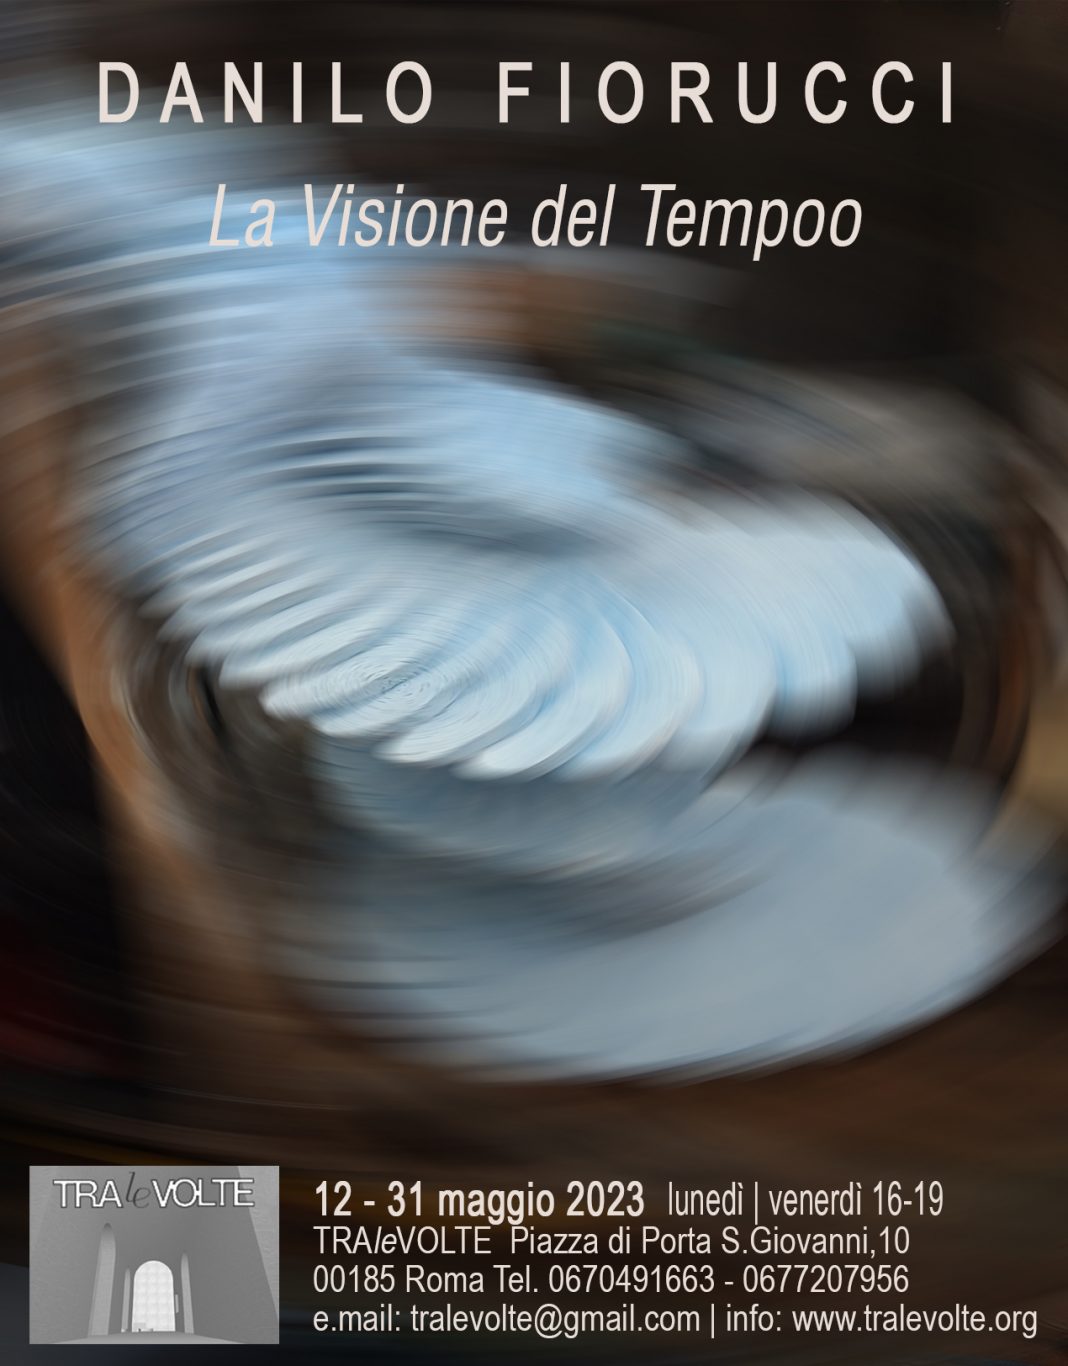 Danilo Fiorucci – La Visione del Tempohttps://www.exibart.com/repository/media/formidable/11/img/79d/Danilo-Fiorucci_Nostro-1068x1366.jpg